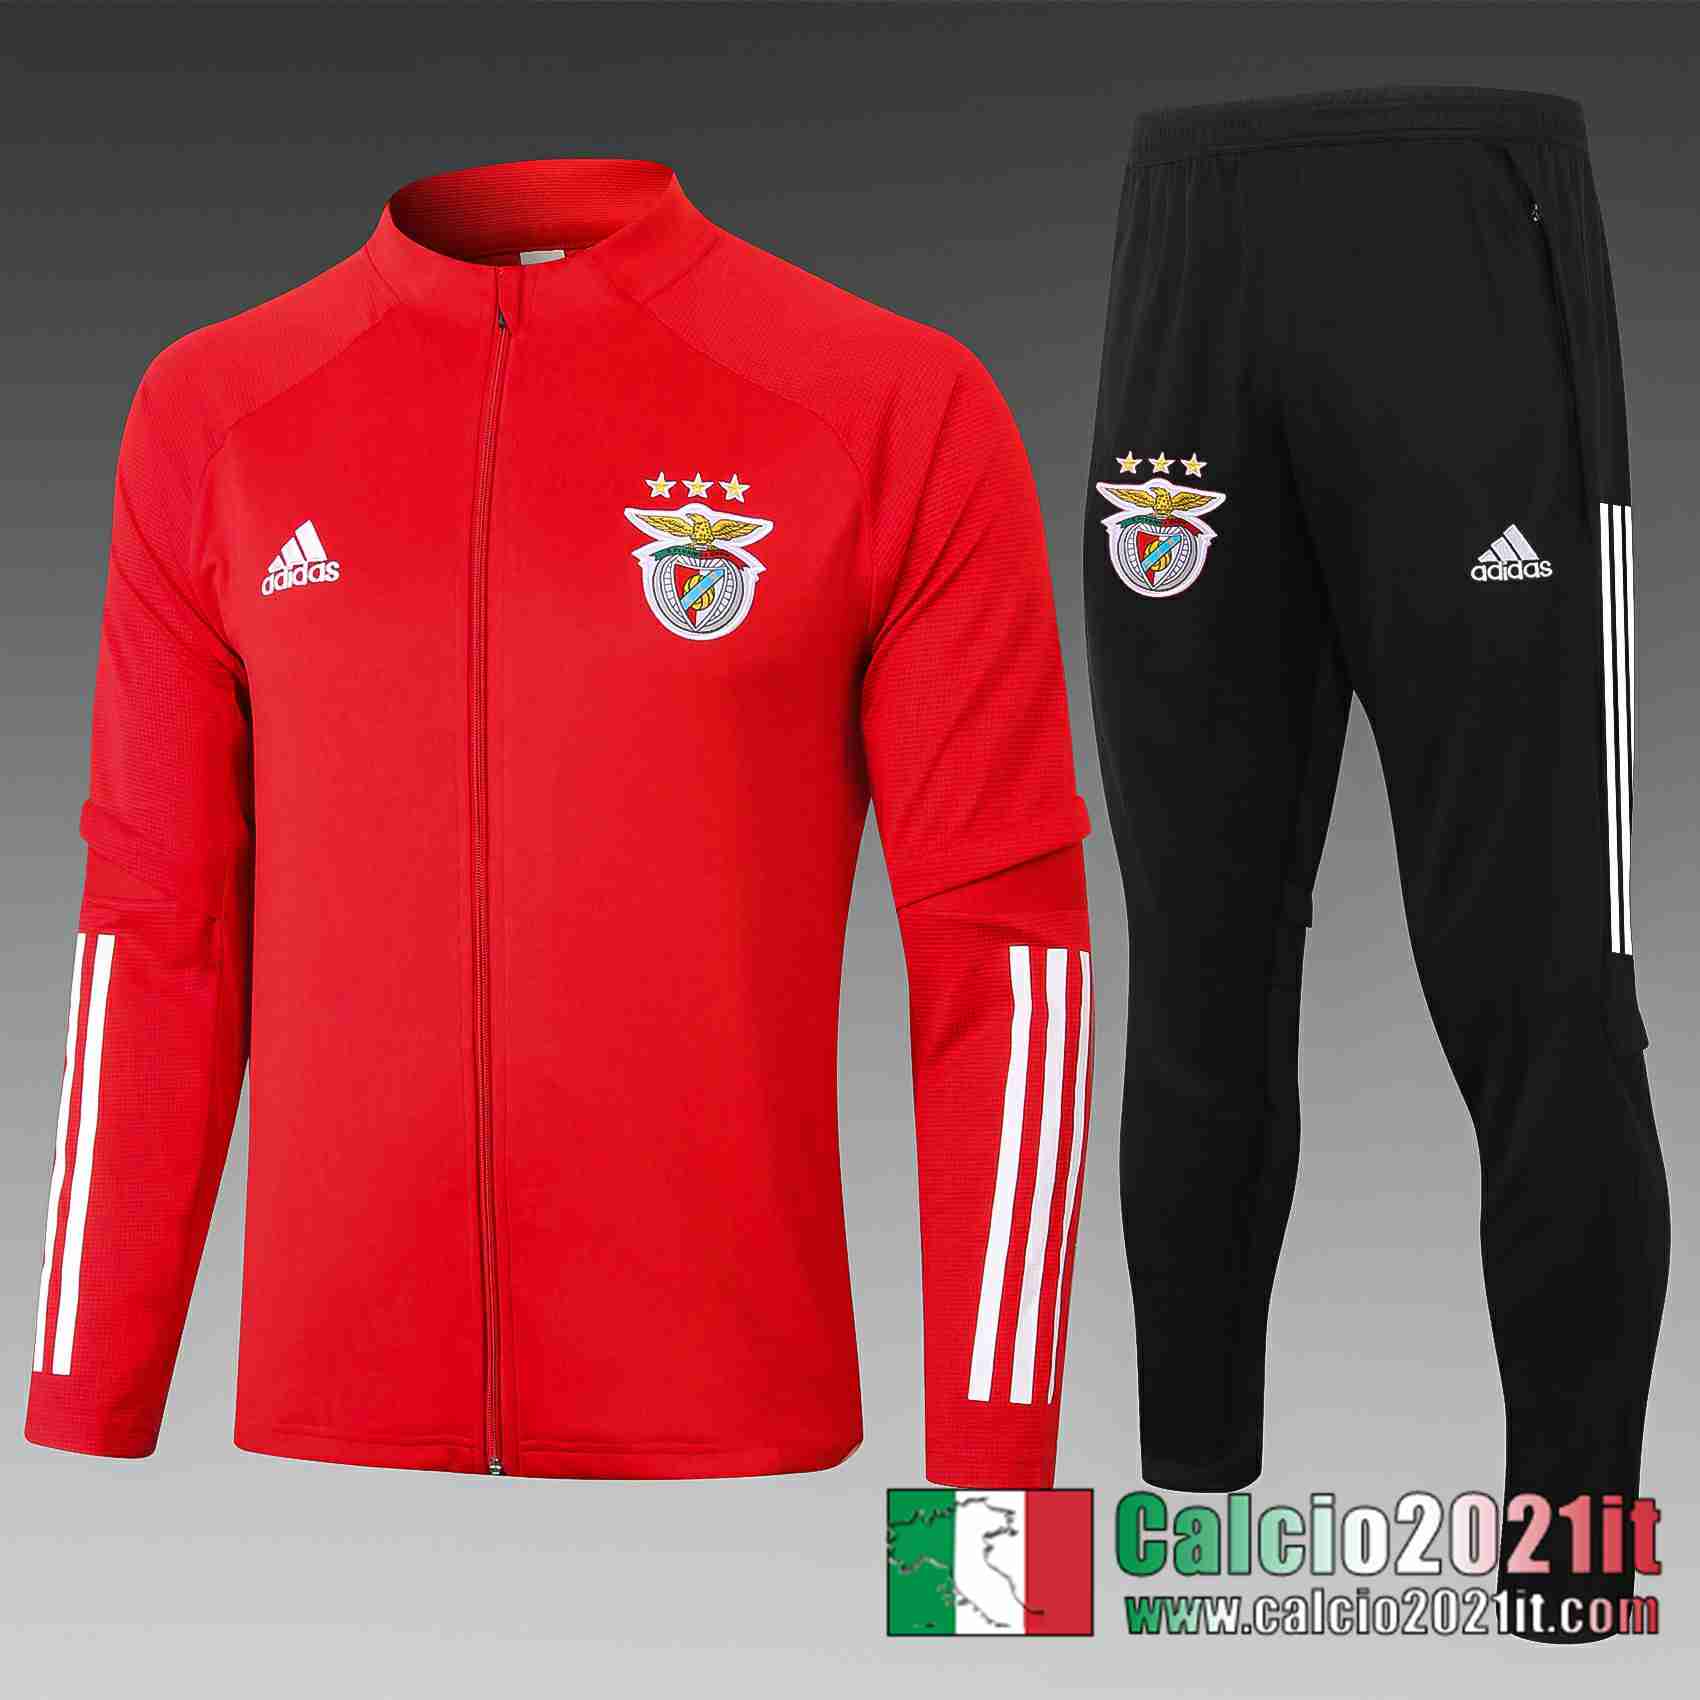 Benfica Giacca Calcio A406 Rosso 2020 2021